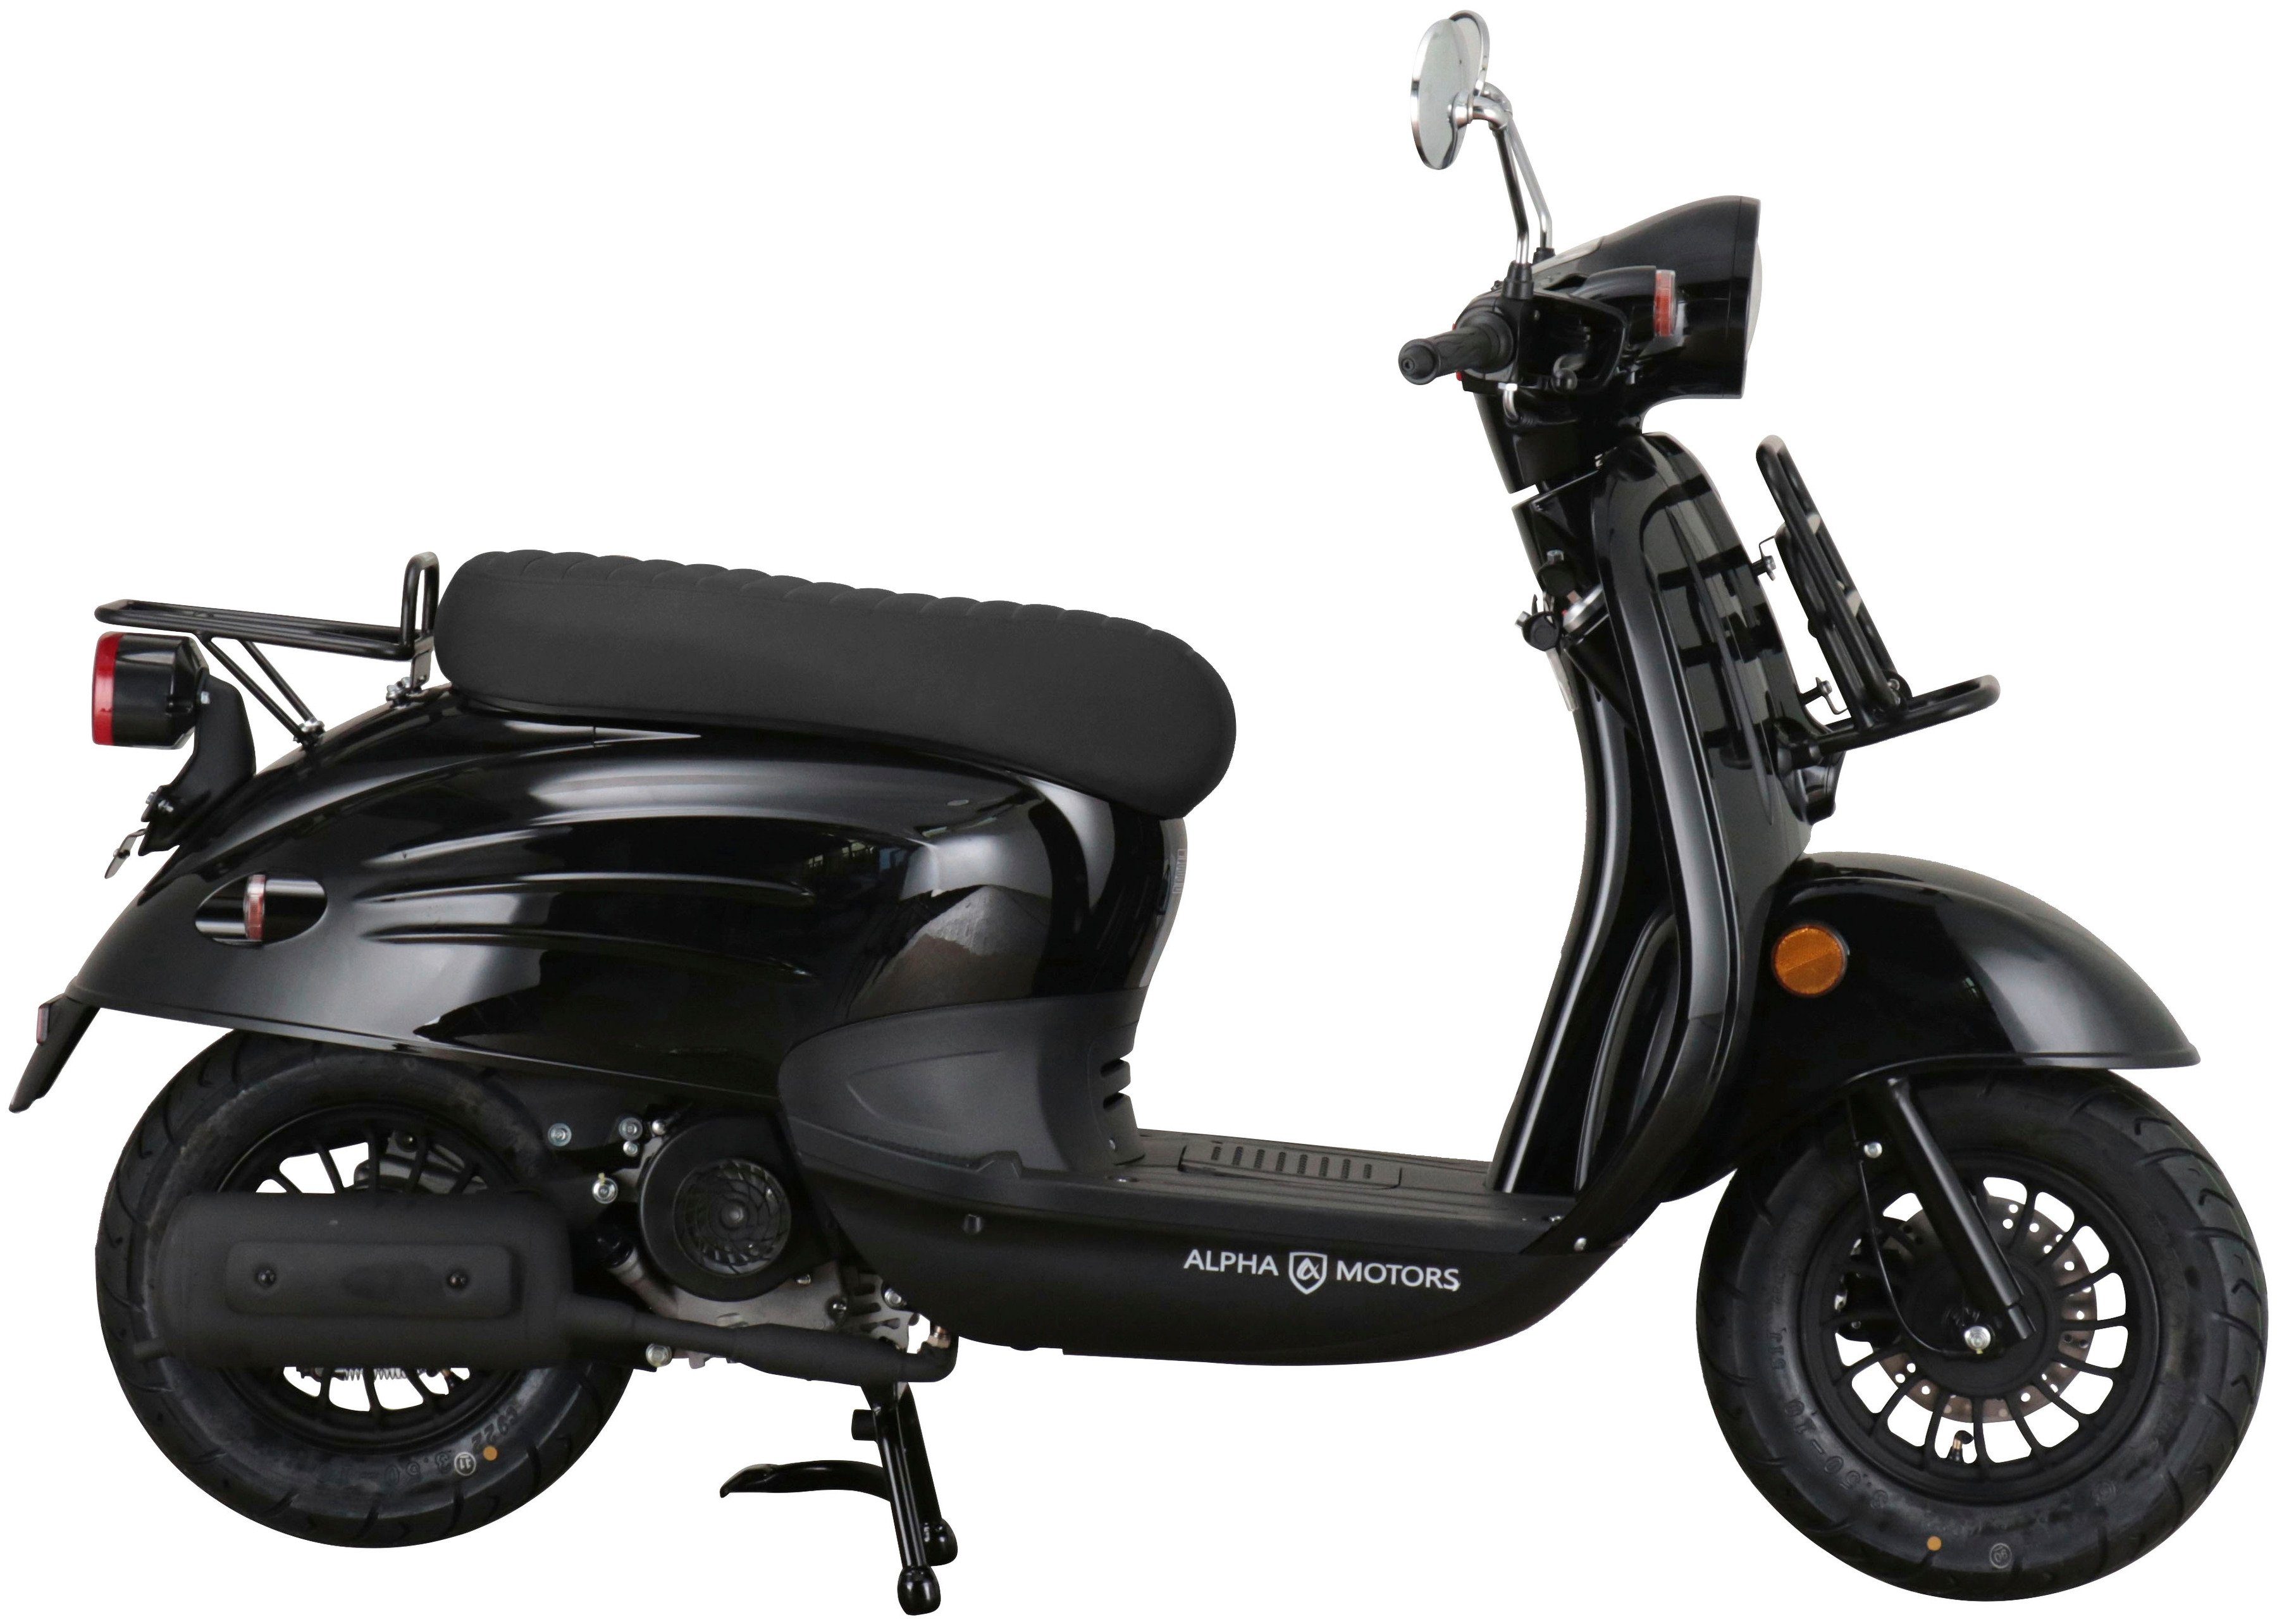 Alpha Motors Motorroller Adria, 50 ccm, 5 Euro schwarz 45 km/h